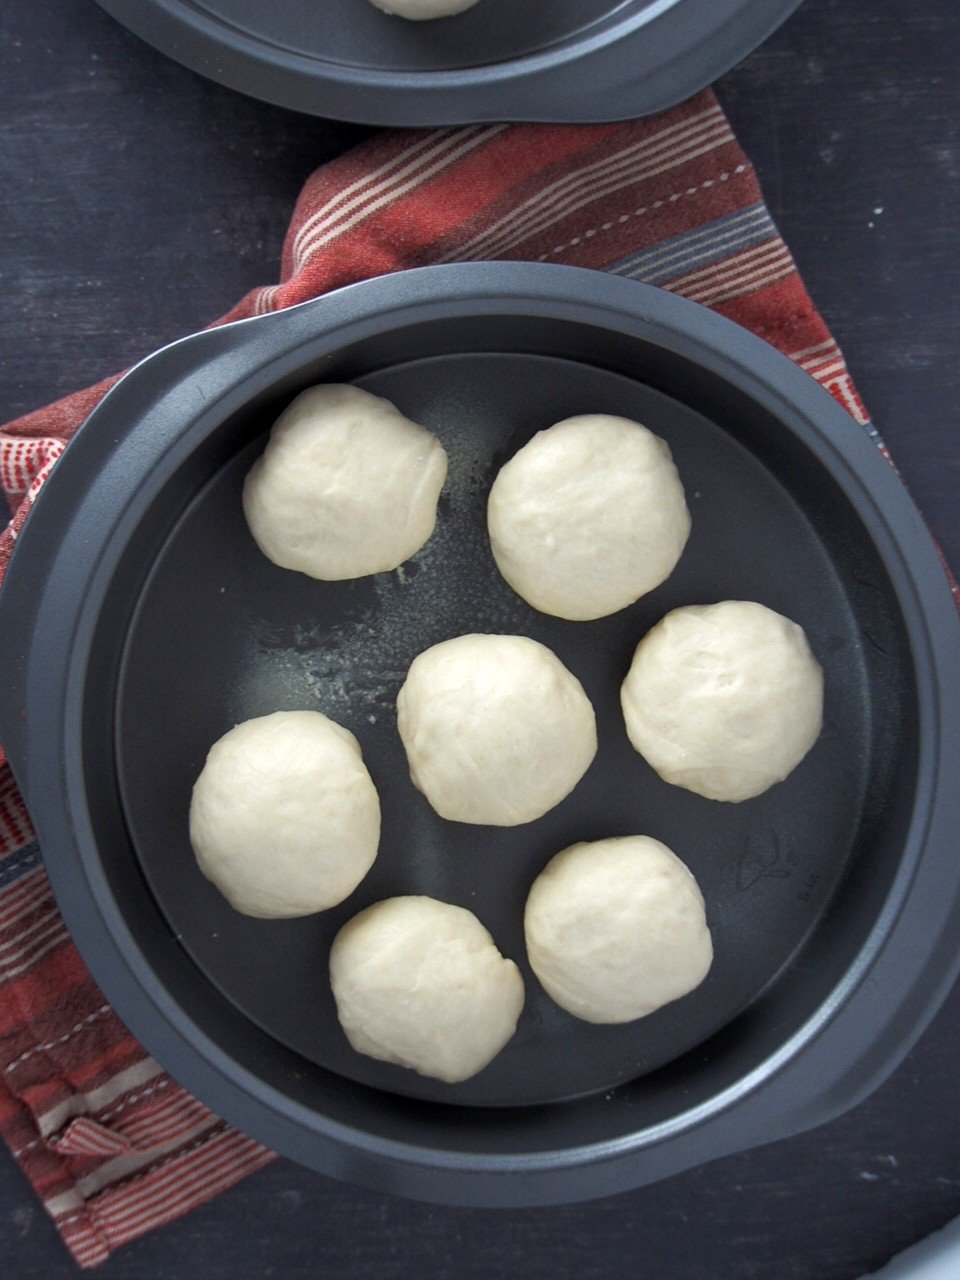 Pan de siosa dough shaped into smooth balls on a baking pan.